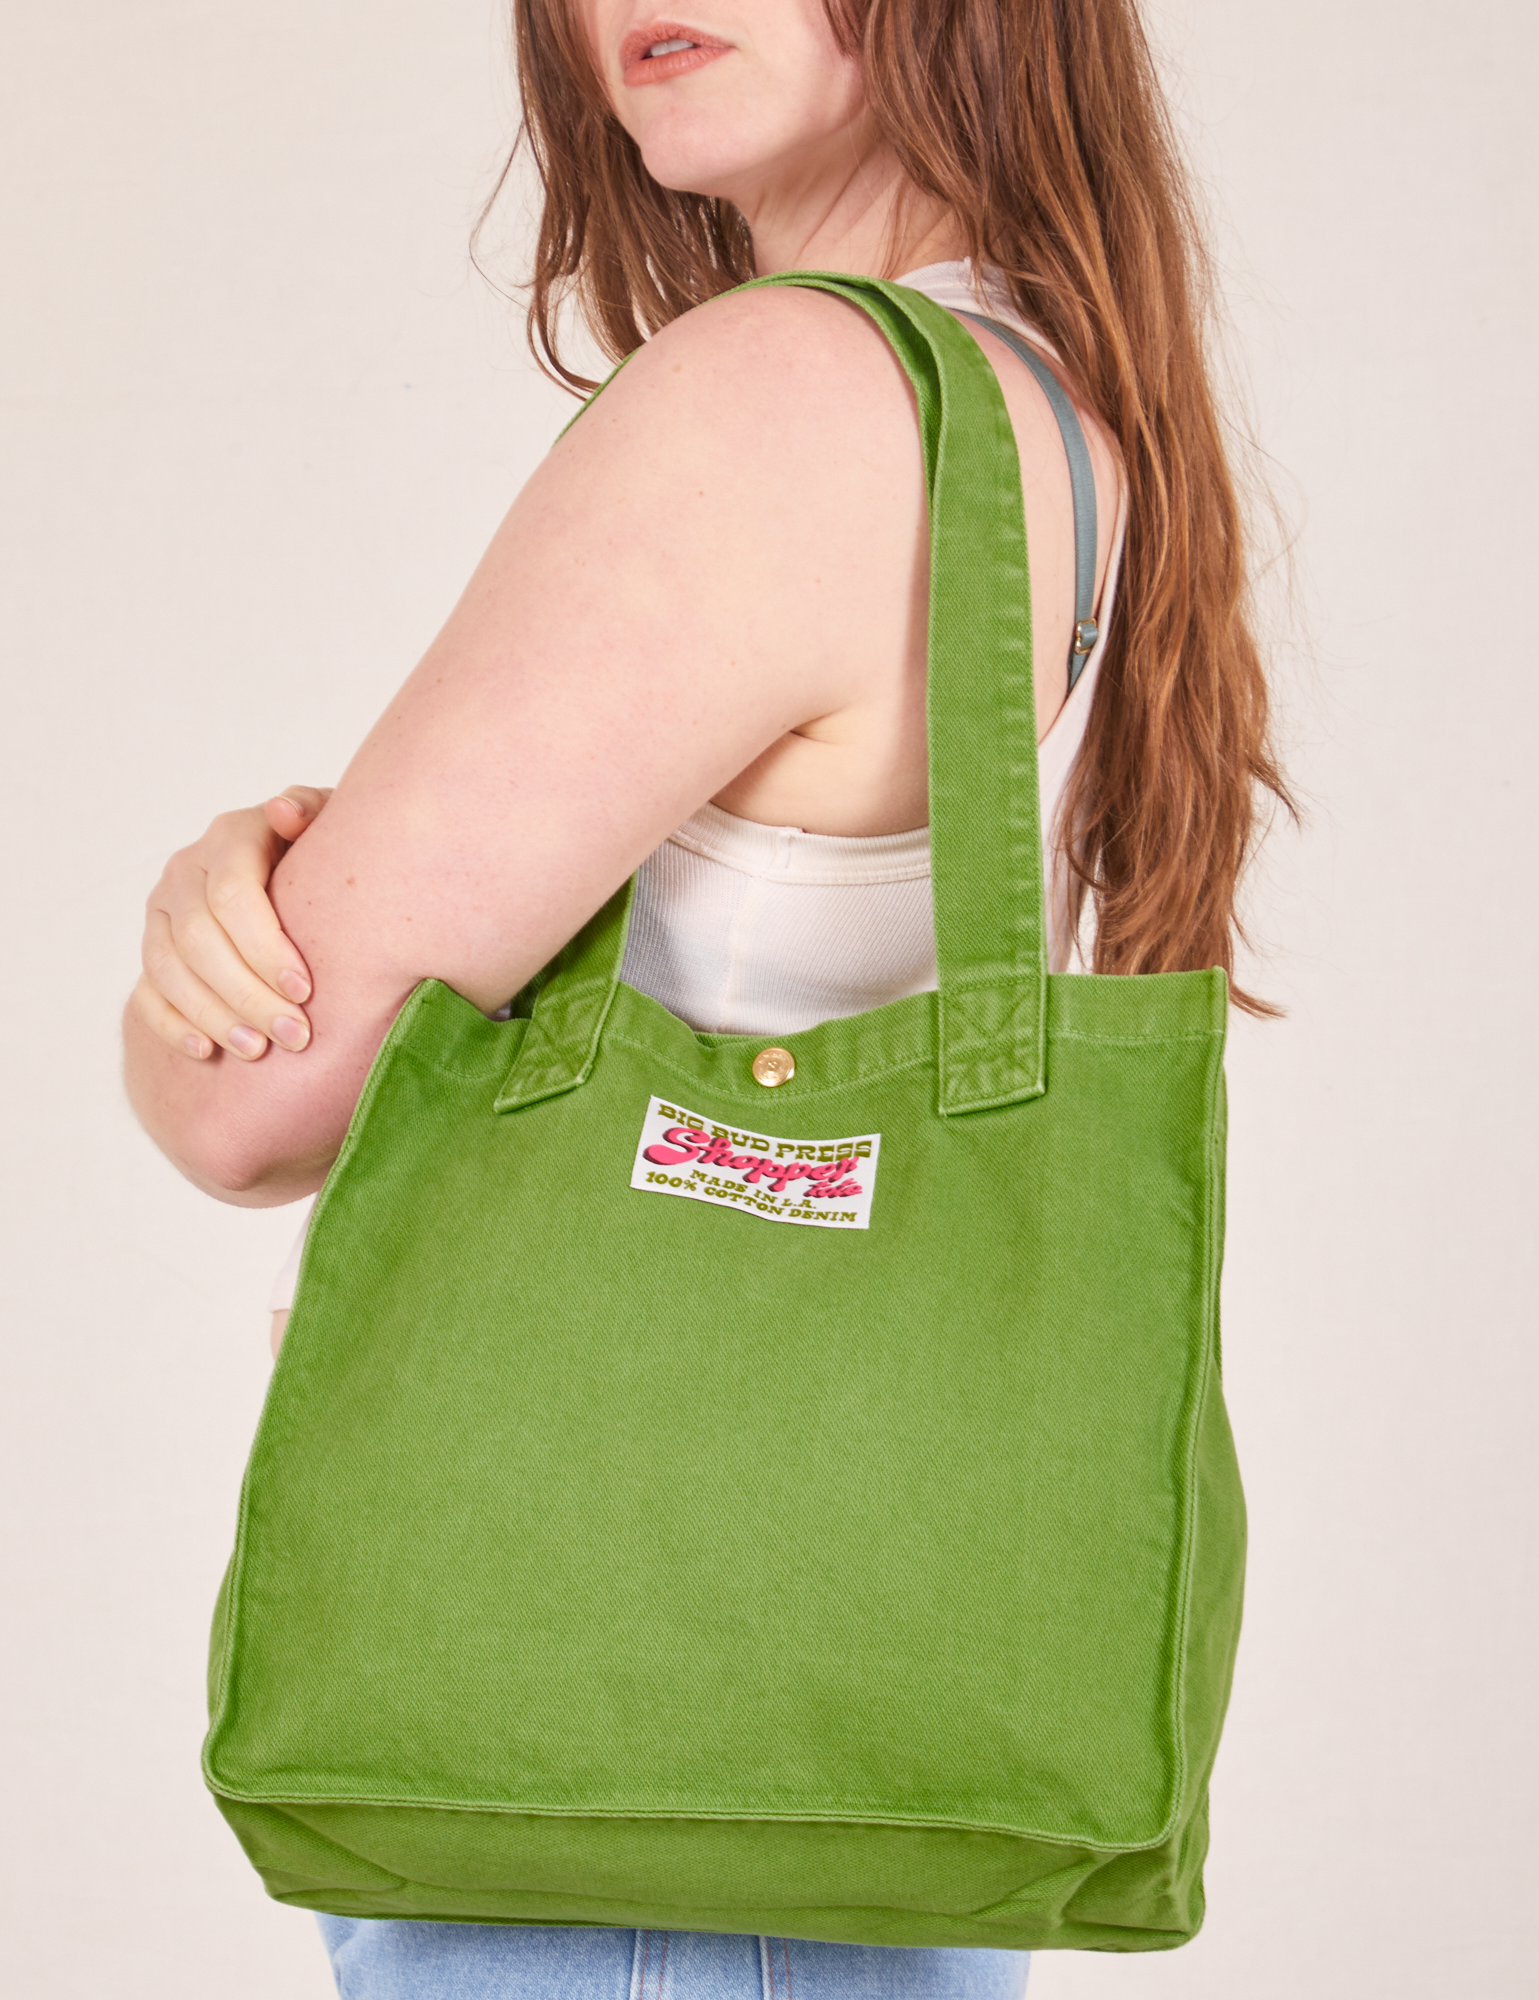 Shopper Tote Bag in Bright Olive worn over shoulder by Allison